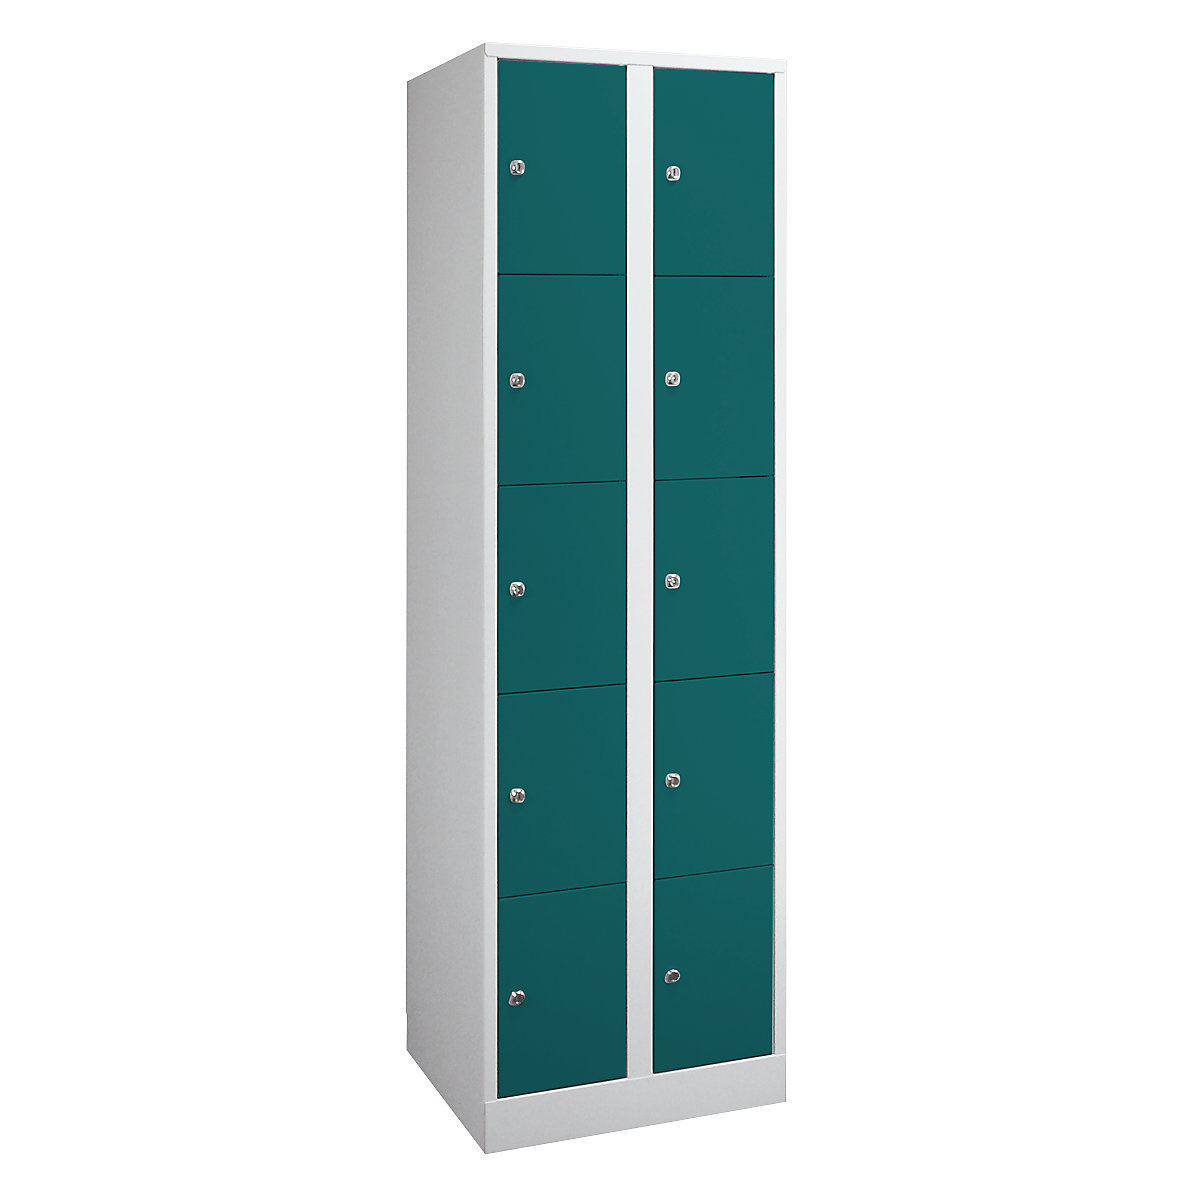 Wolf – Armoire à casiers verrouillables dimensions confort, 10 compartiments, largeur 800 mm, gris clair / vert opale